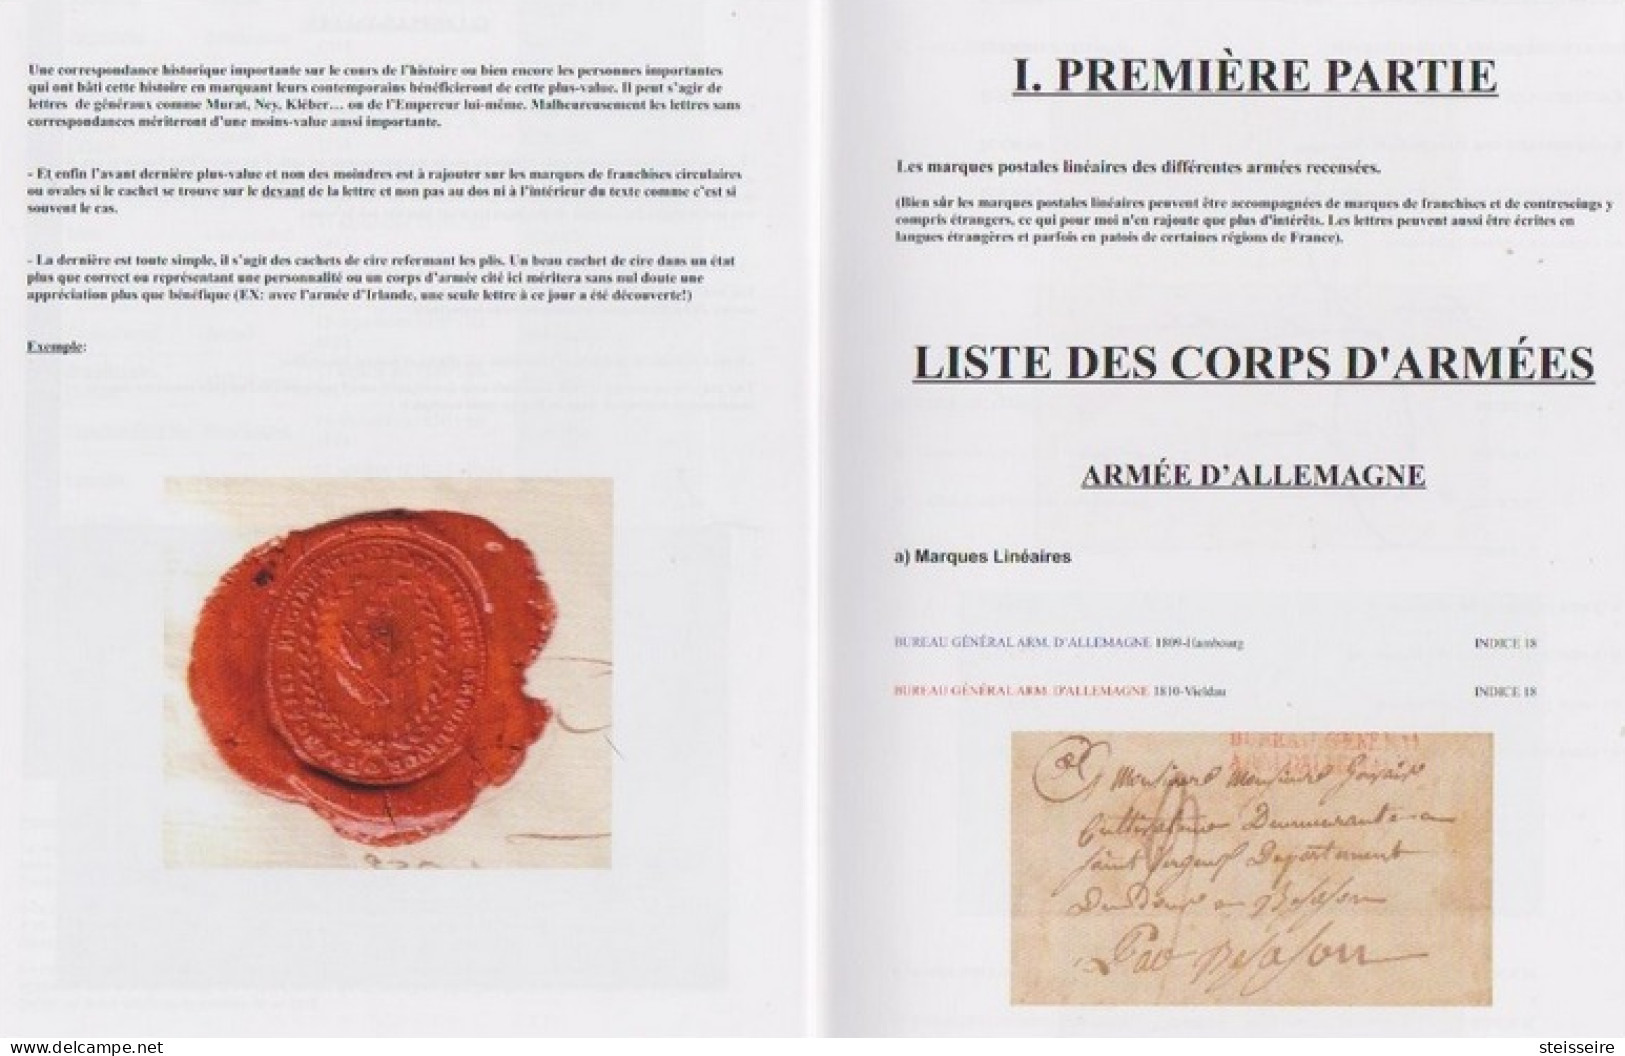 NOUVEAU CATALOGUE DE COTATIONS DES MARQUES POSTALES D'ARMÉES Période 1792/1848 - ...-1853 Vorphilatelie